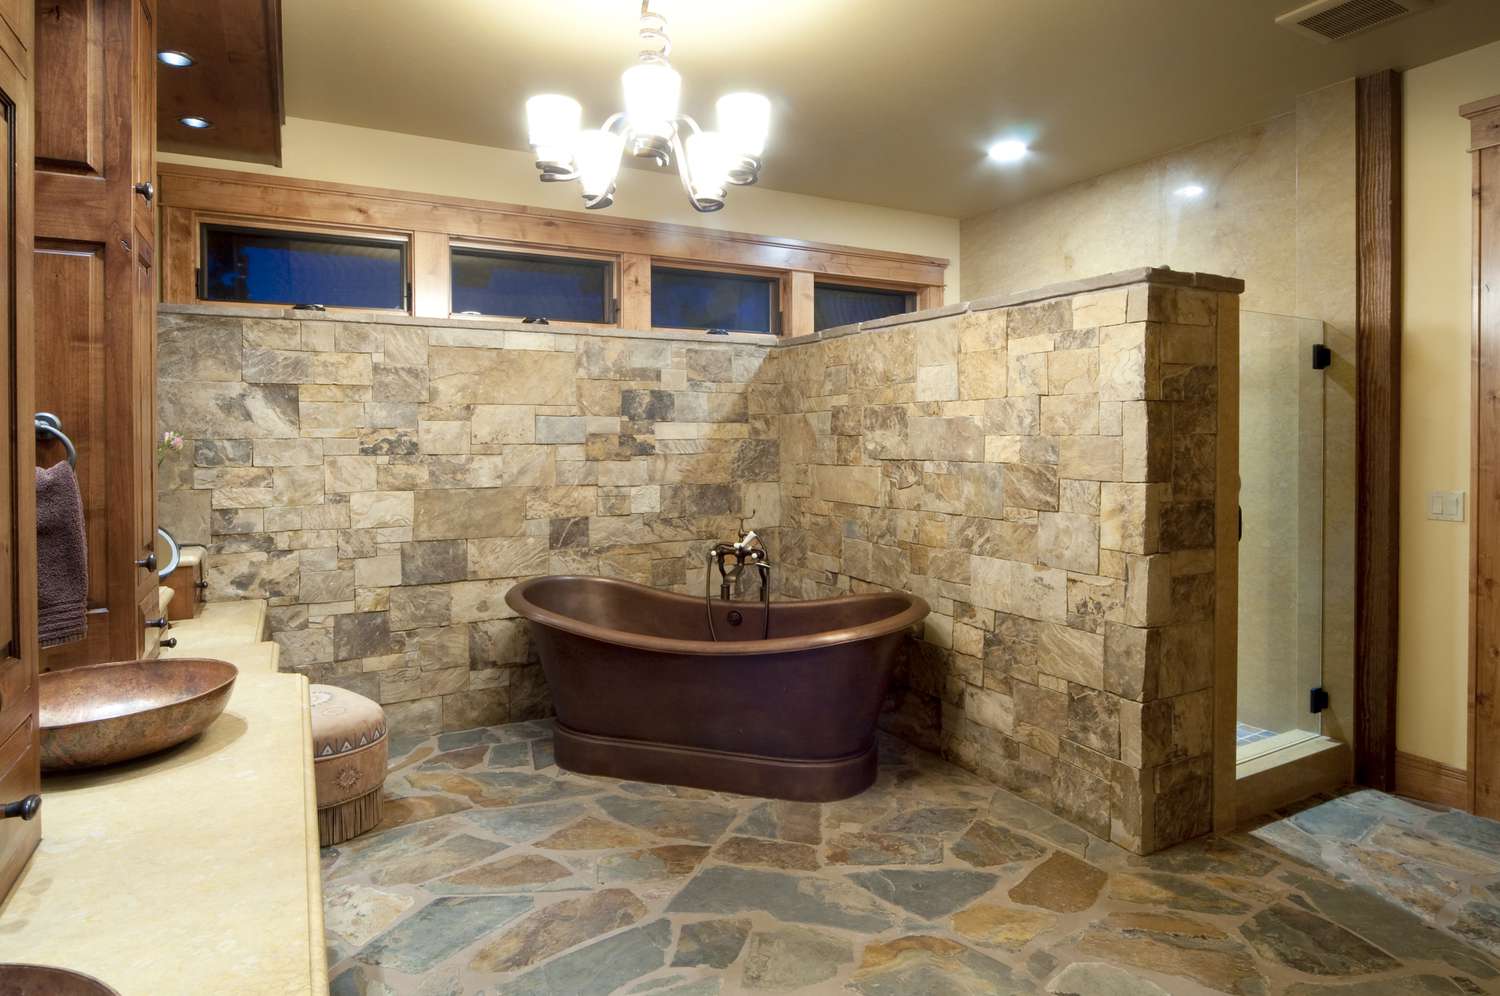 Ein Badezimmer mit Ziegelsteinpflaster